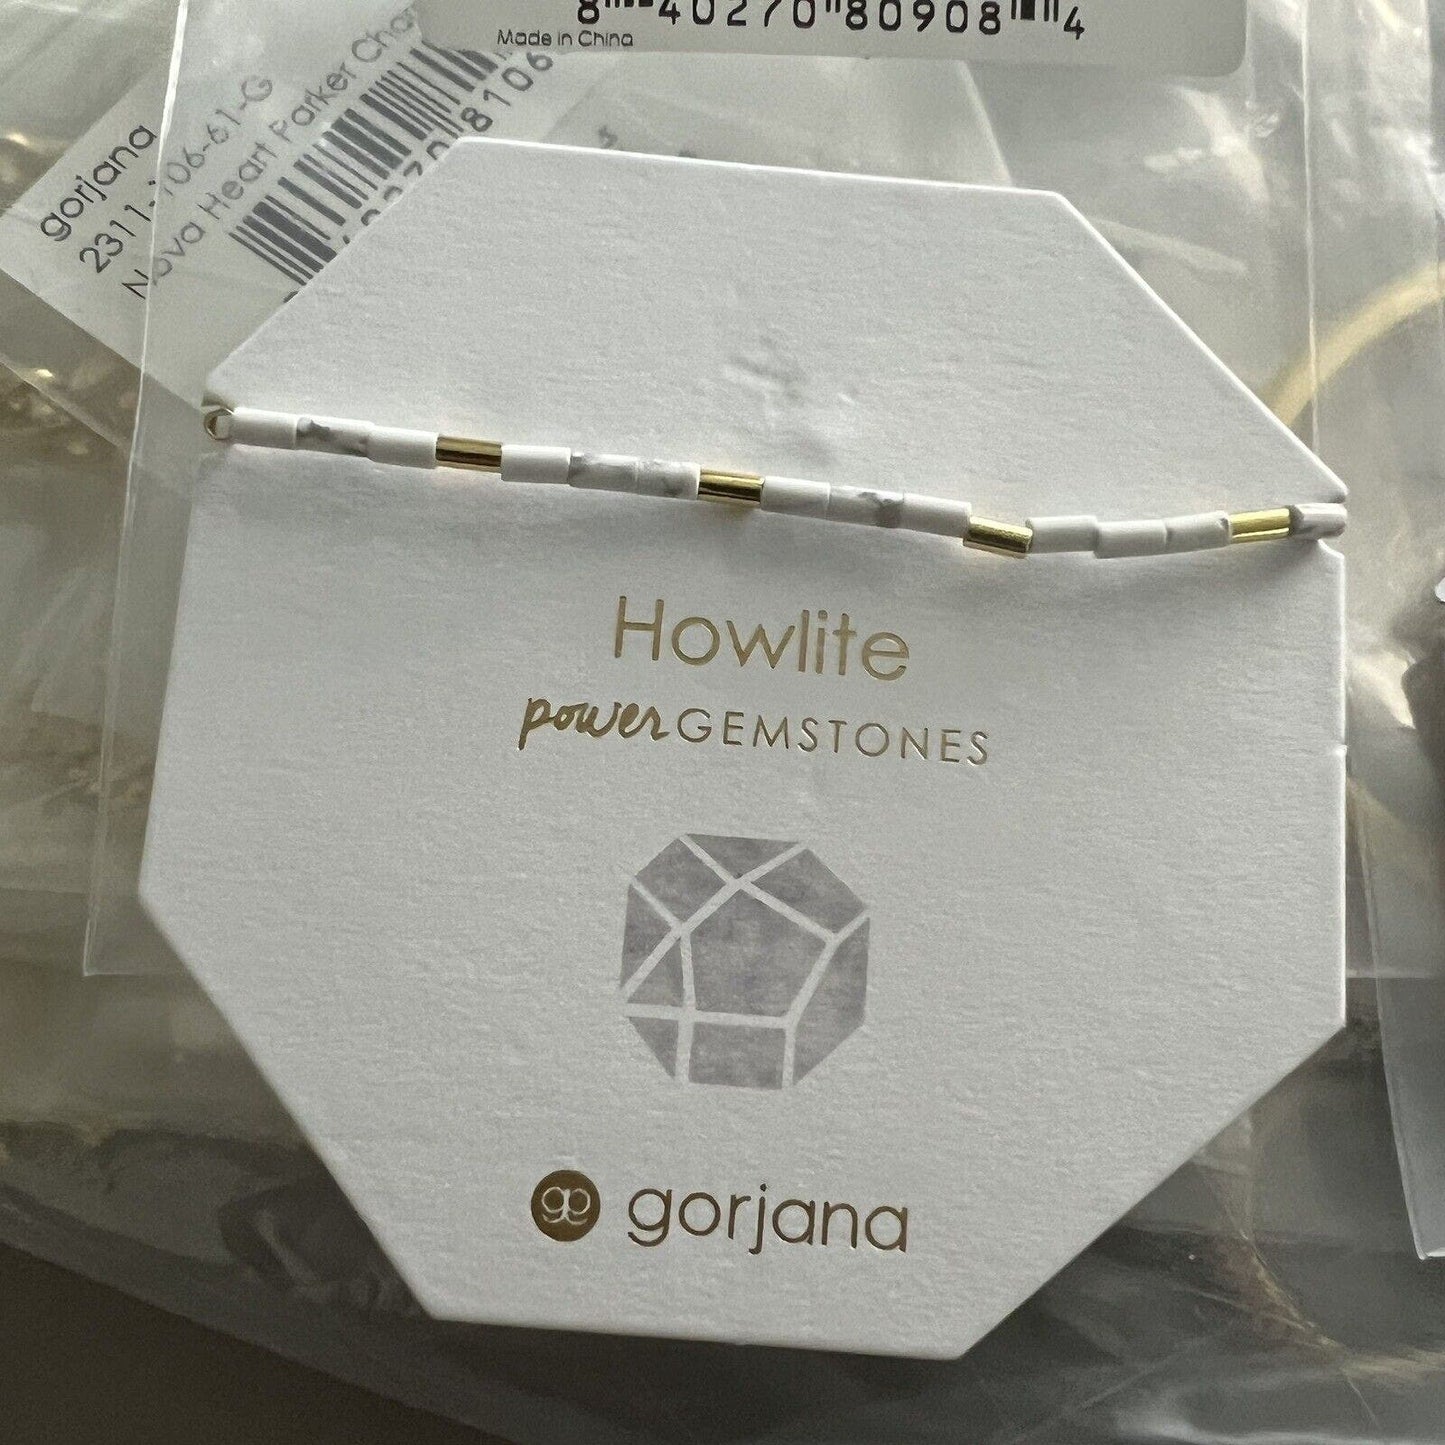 Gorjana Power Gemstone Tatum Howlite Stone Bracelet for Calming 18kgp